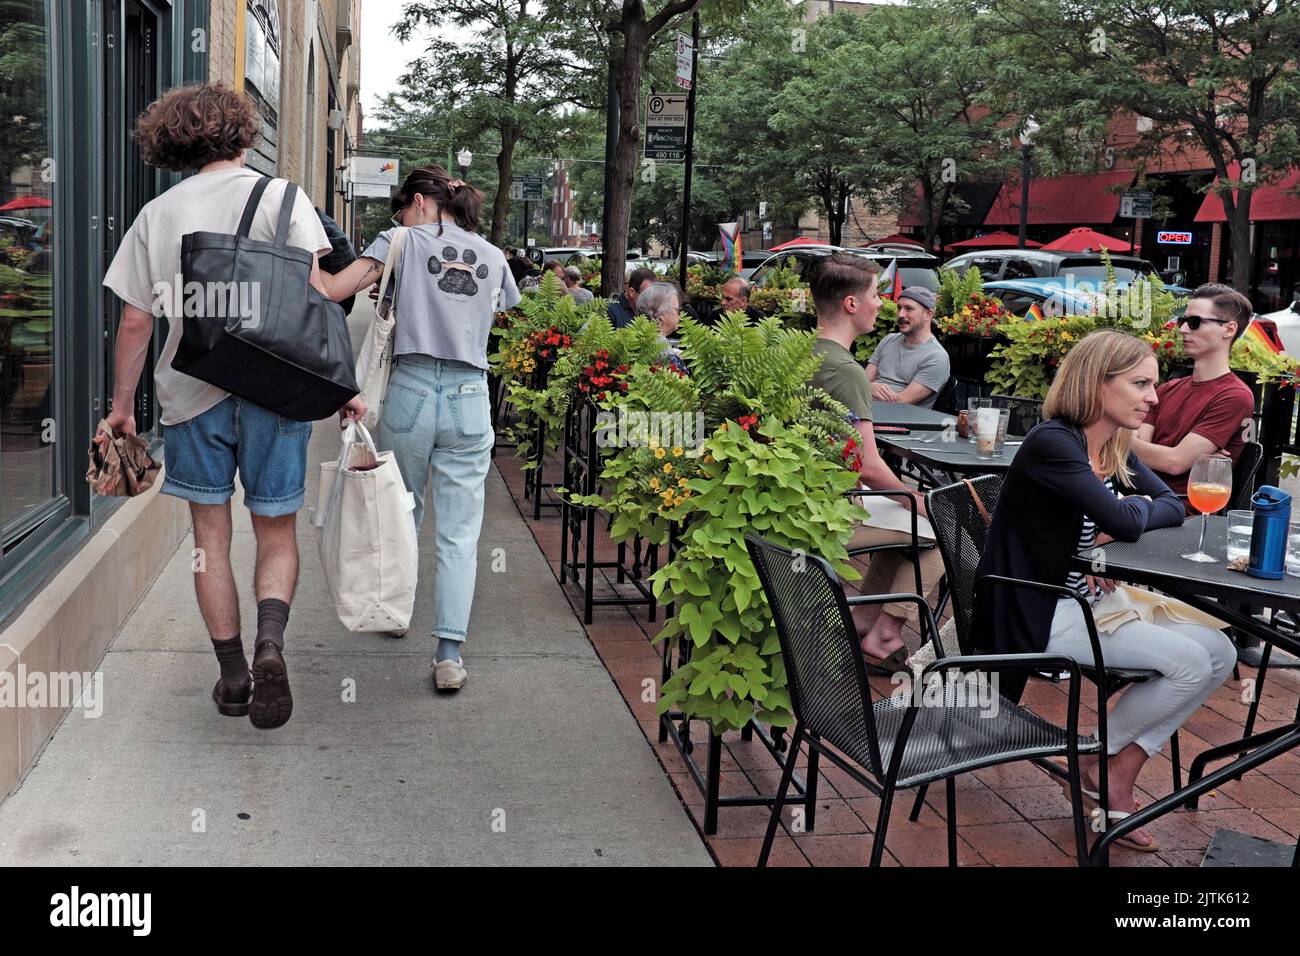 Le persone cenano all'aperto durante un pomeriggio mentre i pedoni camminano lungo il marciapiede nel quartiere di Andersonville a Chicago, Illinois, USA. Foto Stock